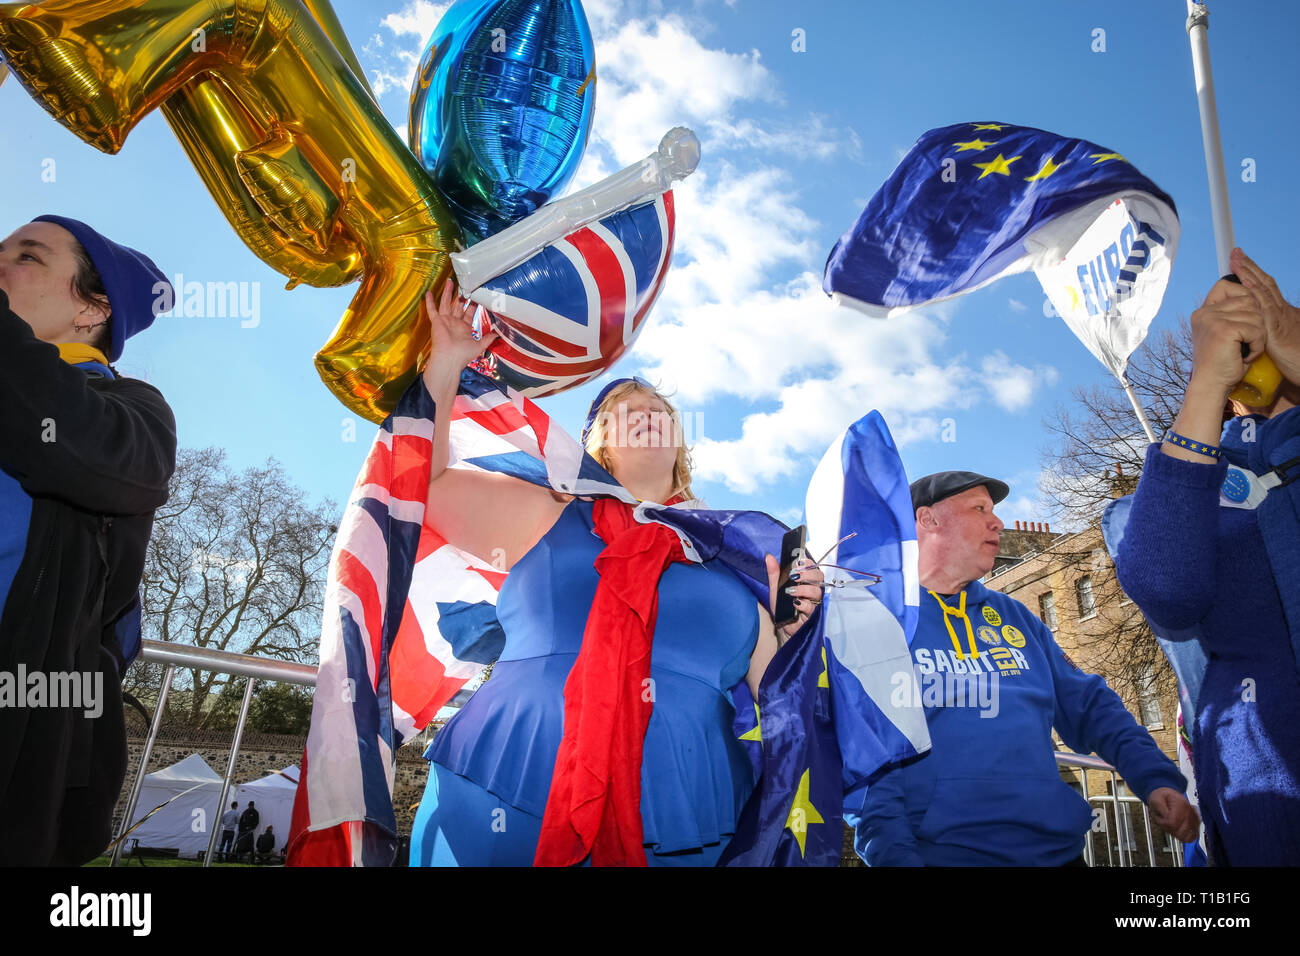 Westminster, London, UK, le 25 mars 2019. Pro- et Anti-Brexit chant protestataires et fulminer à l'autre à l'extérieur du Parlement de Westminster, sur une autre journée mouvementée d'incertitude politique autour Brexit. Credit : Imageplotter/Alamy Live News Banque D'Images